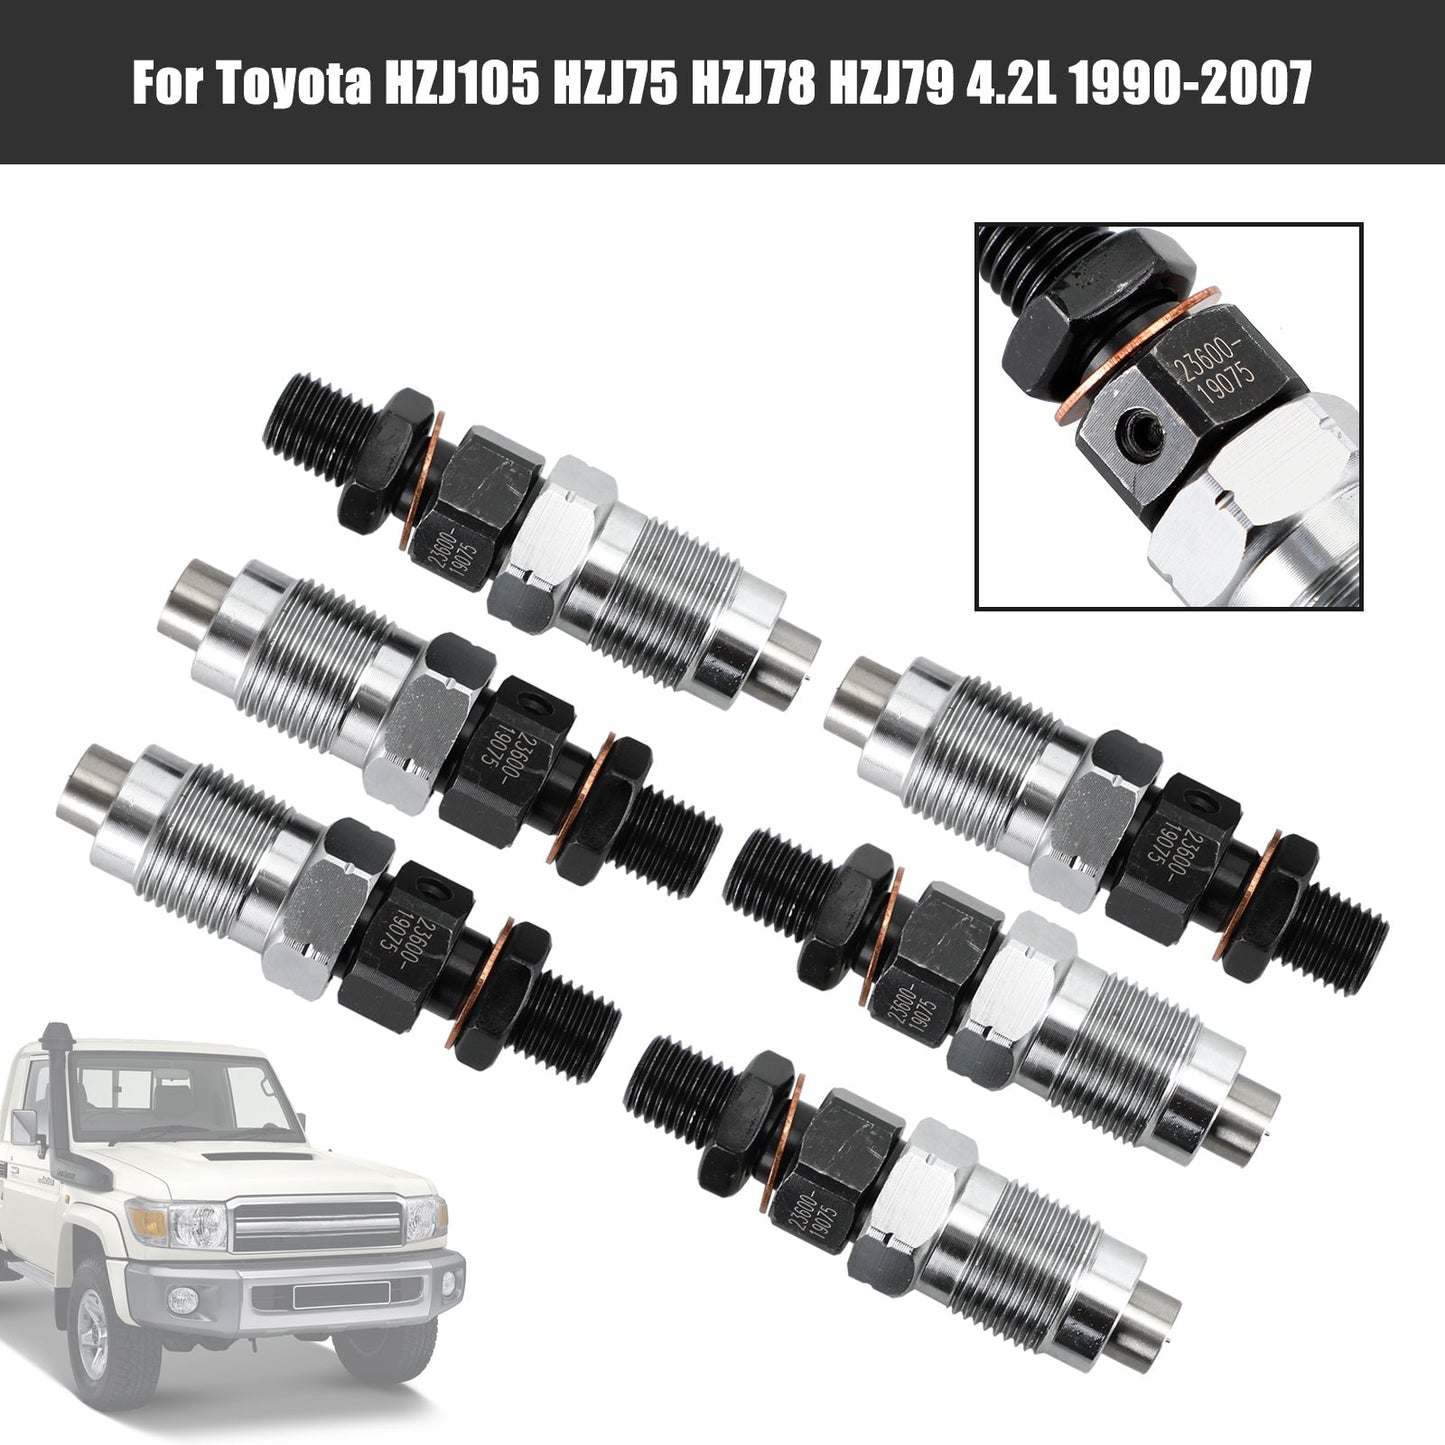 1990-2007 Toyota HZJ105 HZJ75 HZJ78 HZJ79 6 pièces Injecteurs de Carburant 23600-19075 Fedex Express